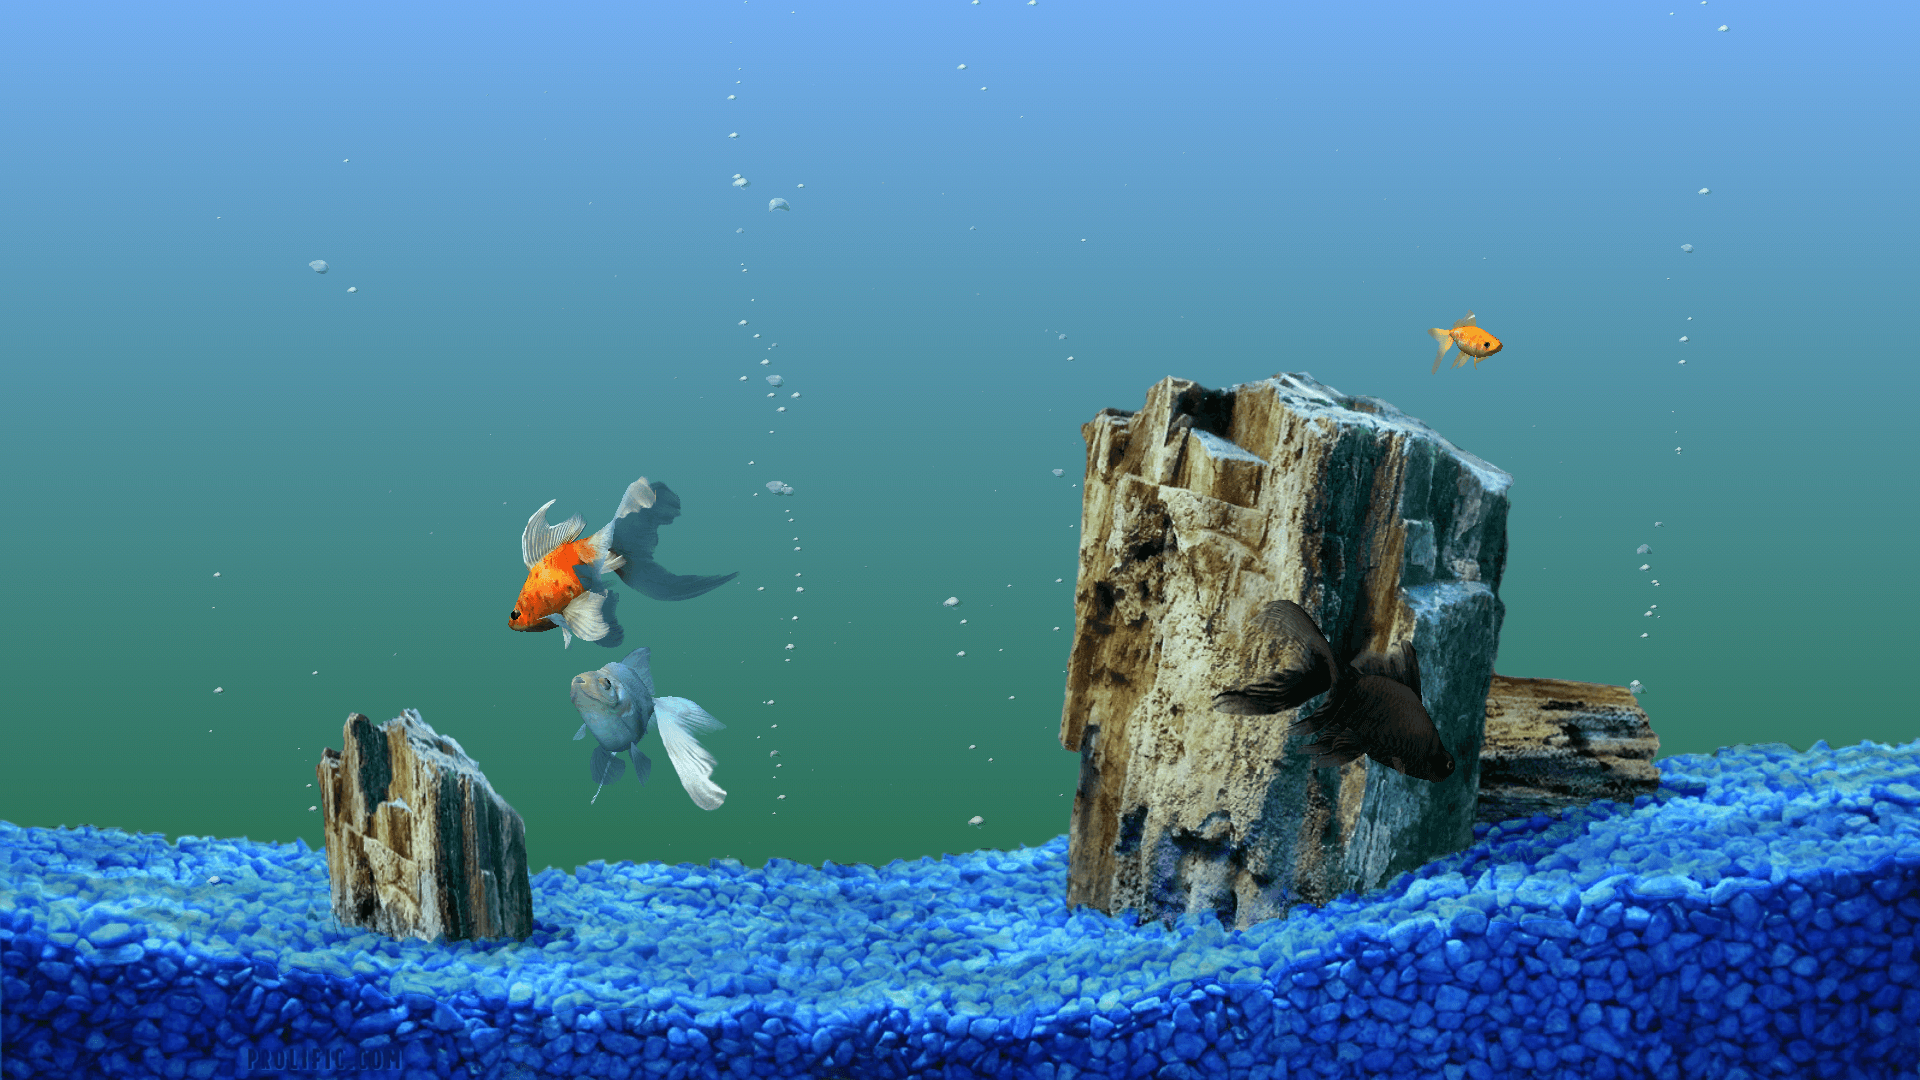 Aquarium Background, Wallpaper, Image, Picture. Design